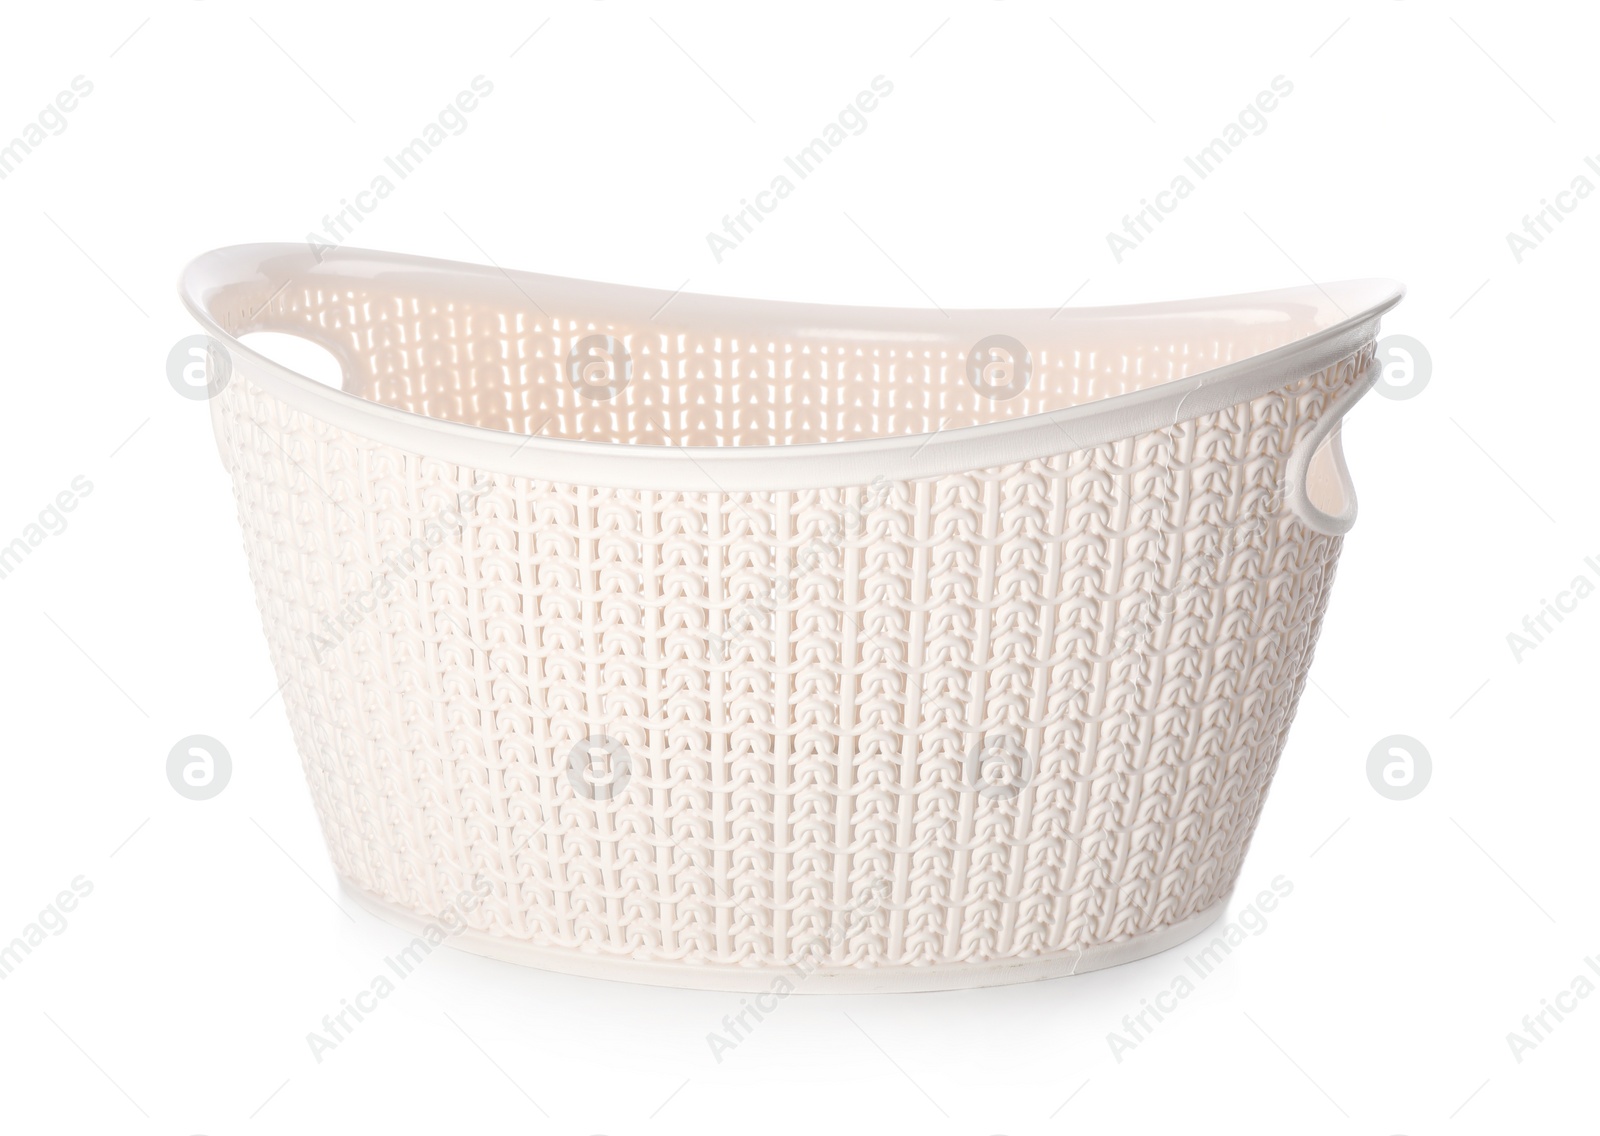 Photo of Light plastic laundry basket isolated on white